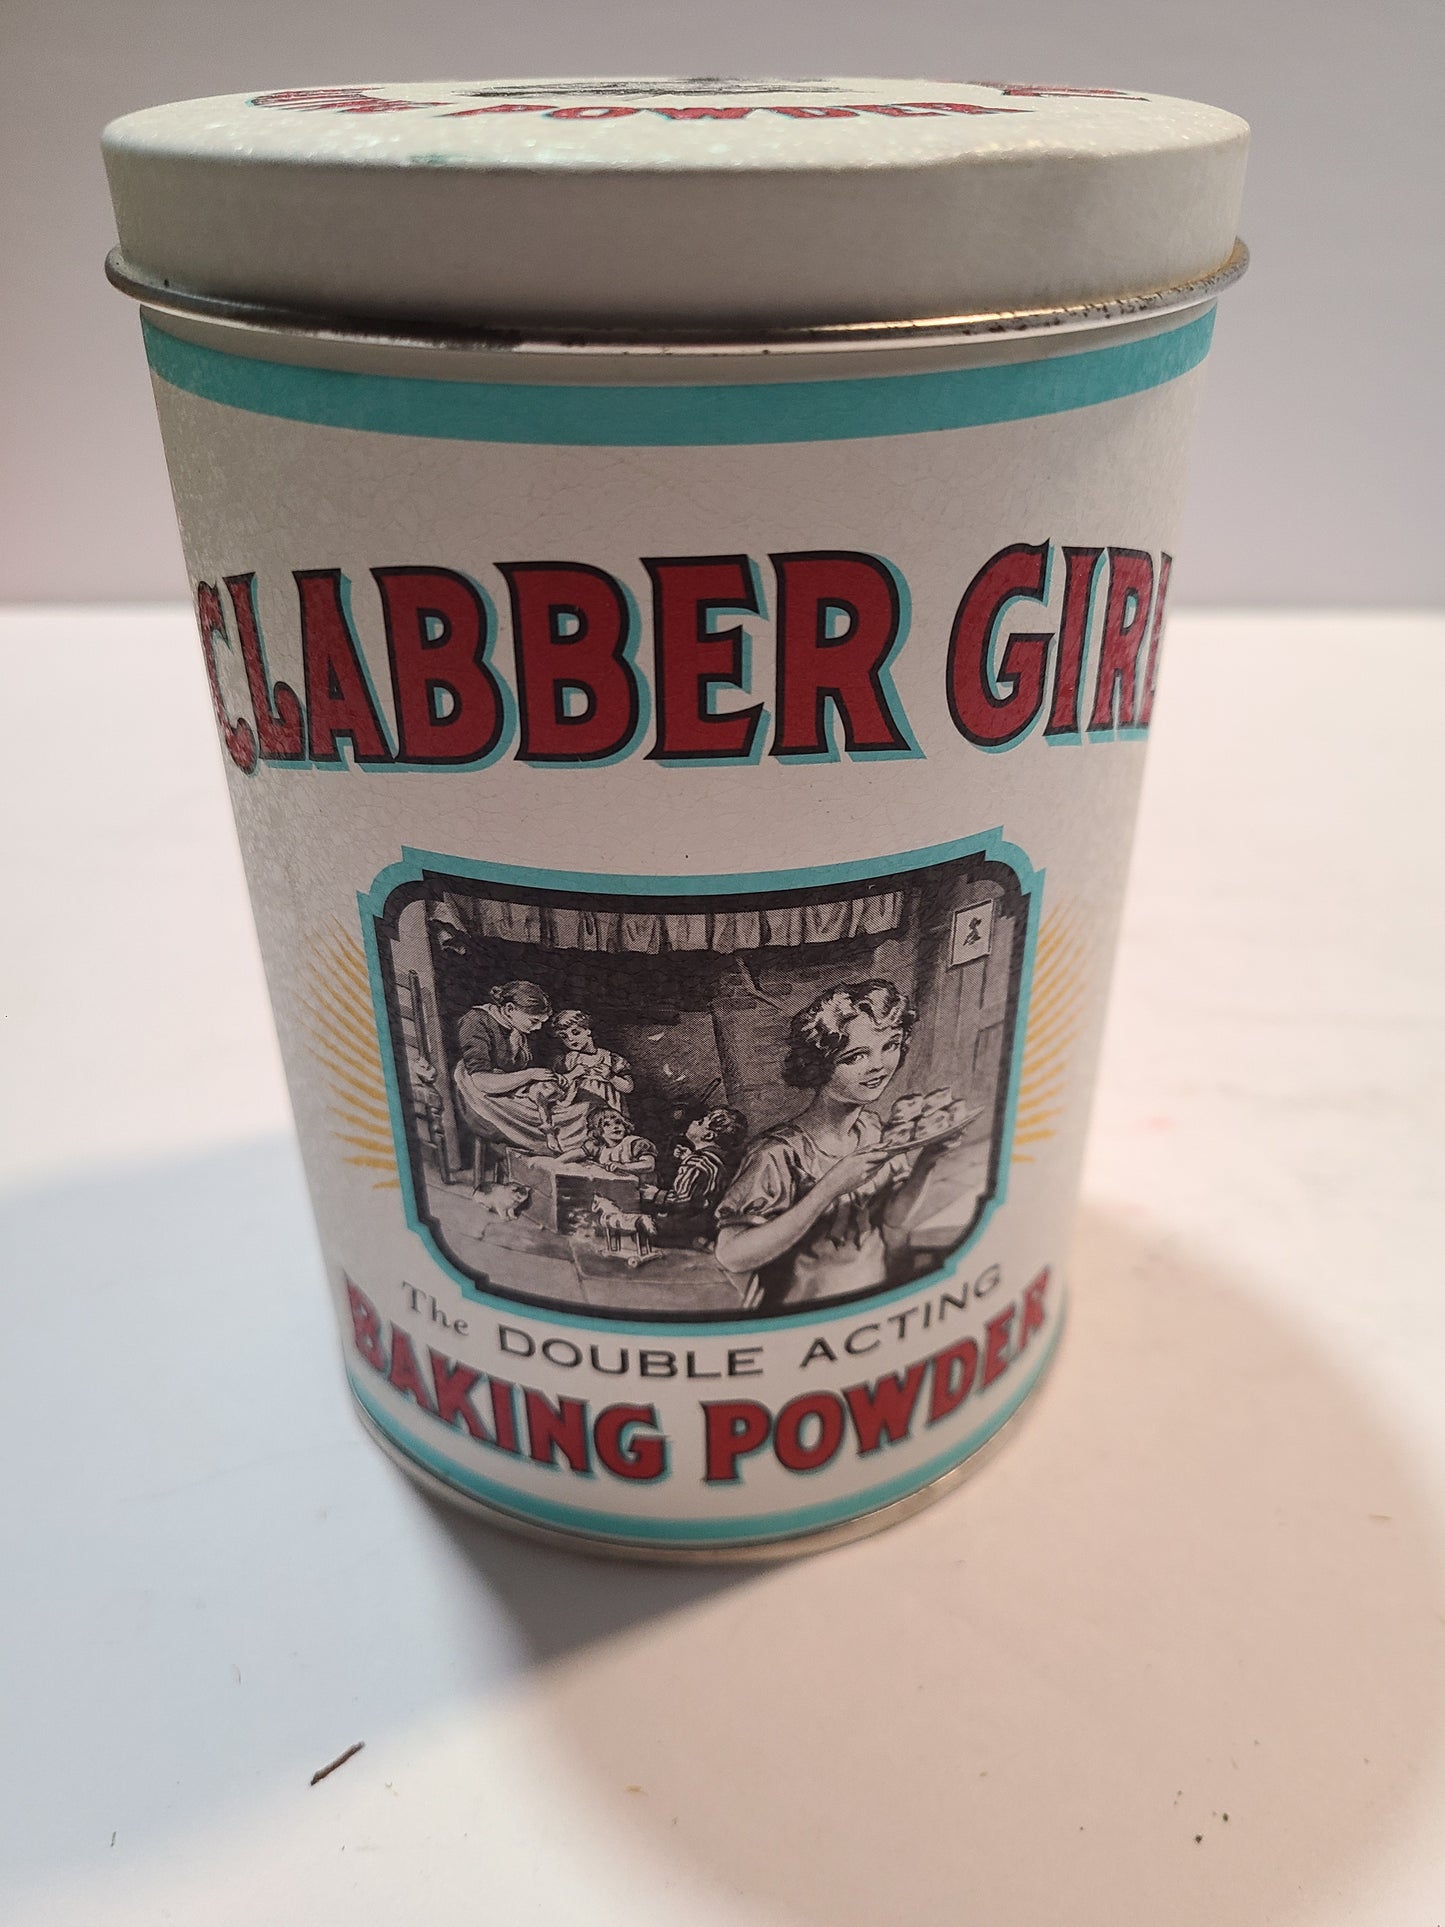 Vintage Clabber Girl baking powder tin